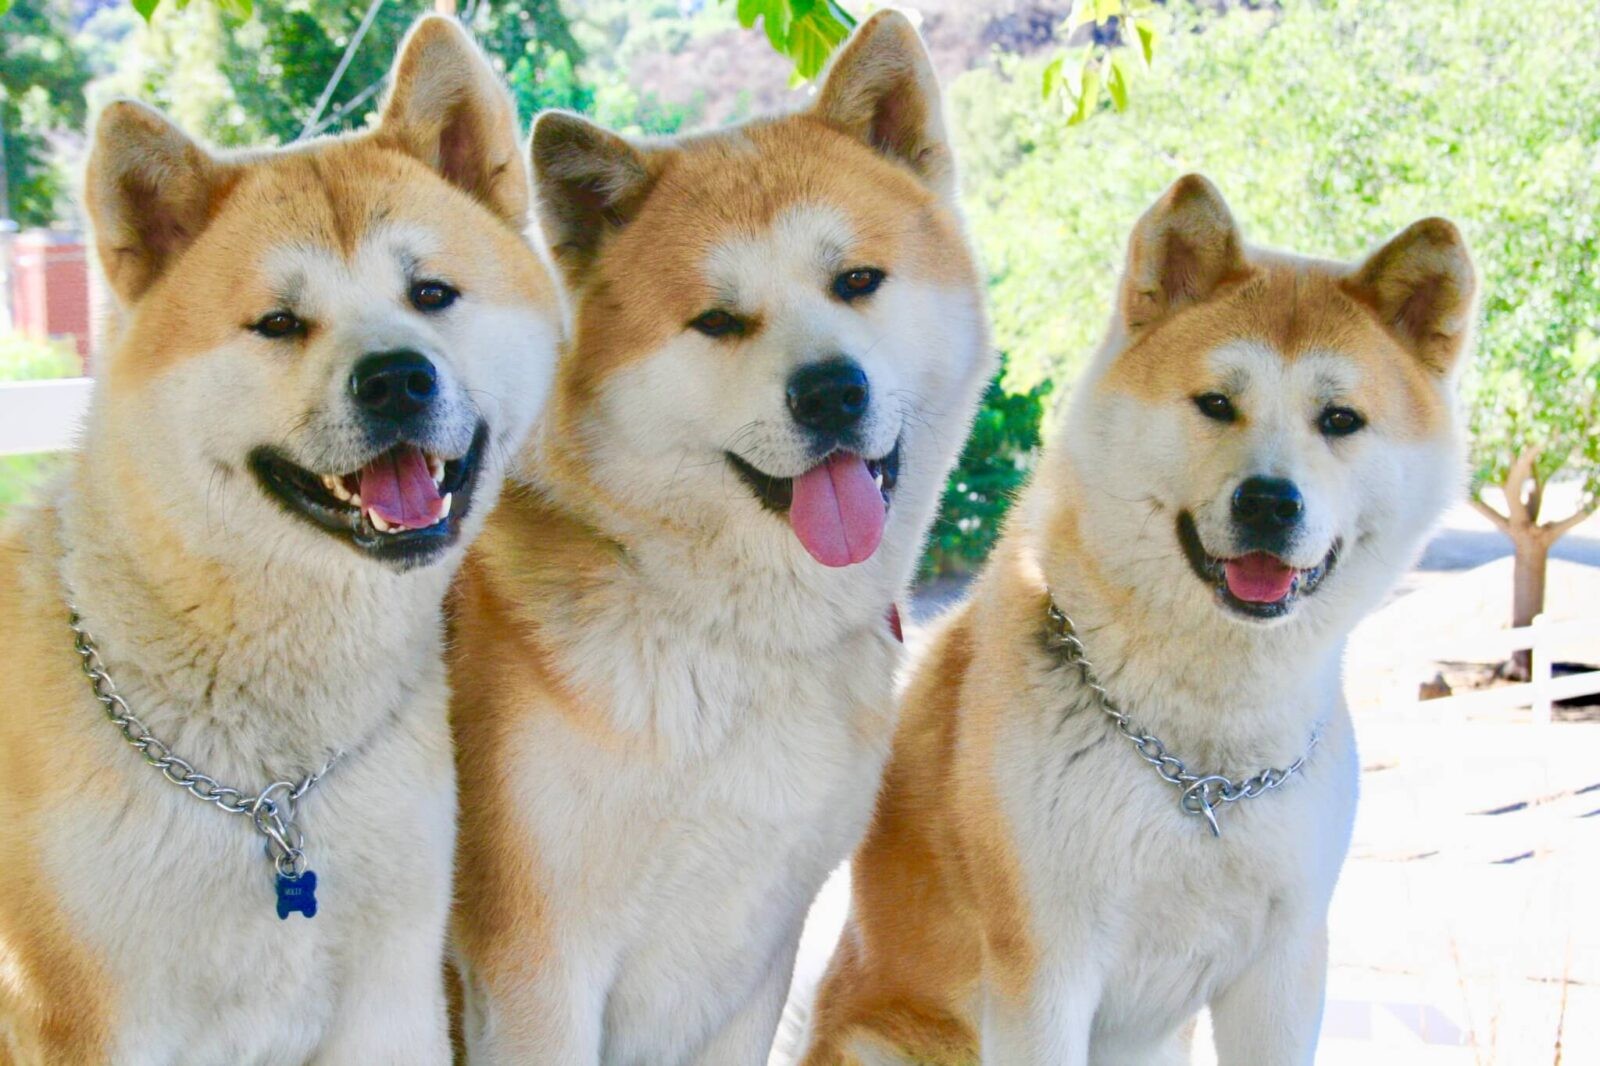 Chico, Layla e Forrest, os três cães da raça Akita que interpretaram o Hachi adulto e idoso (Foto: Vicki Wong and Hachi/ Reprodução)